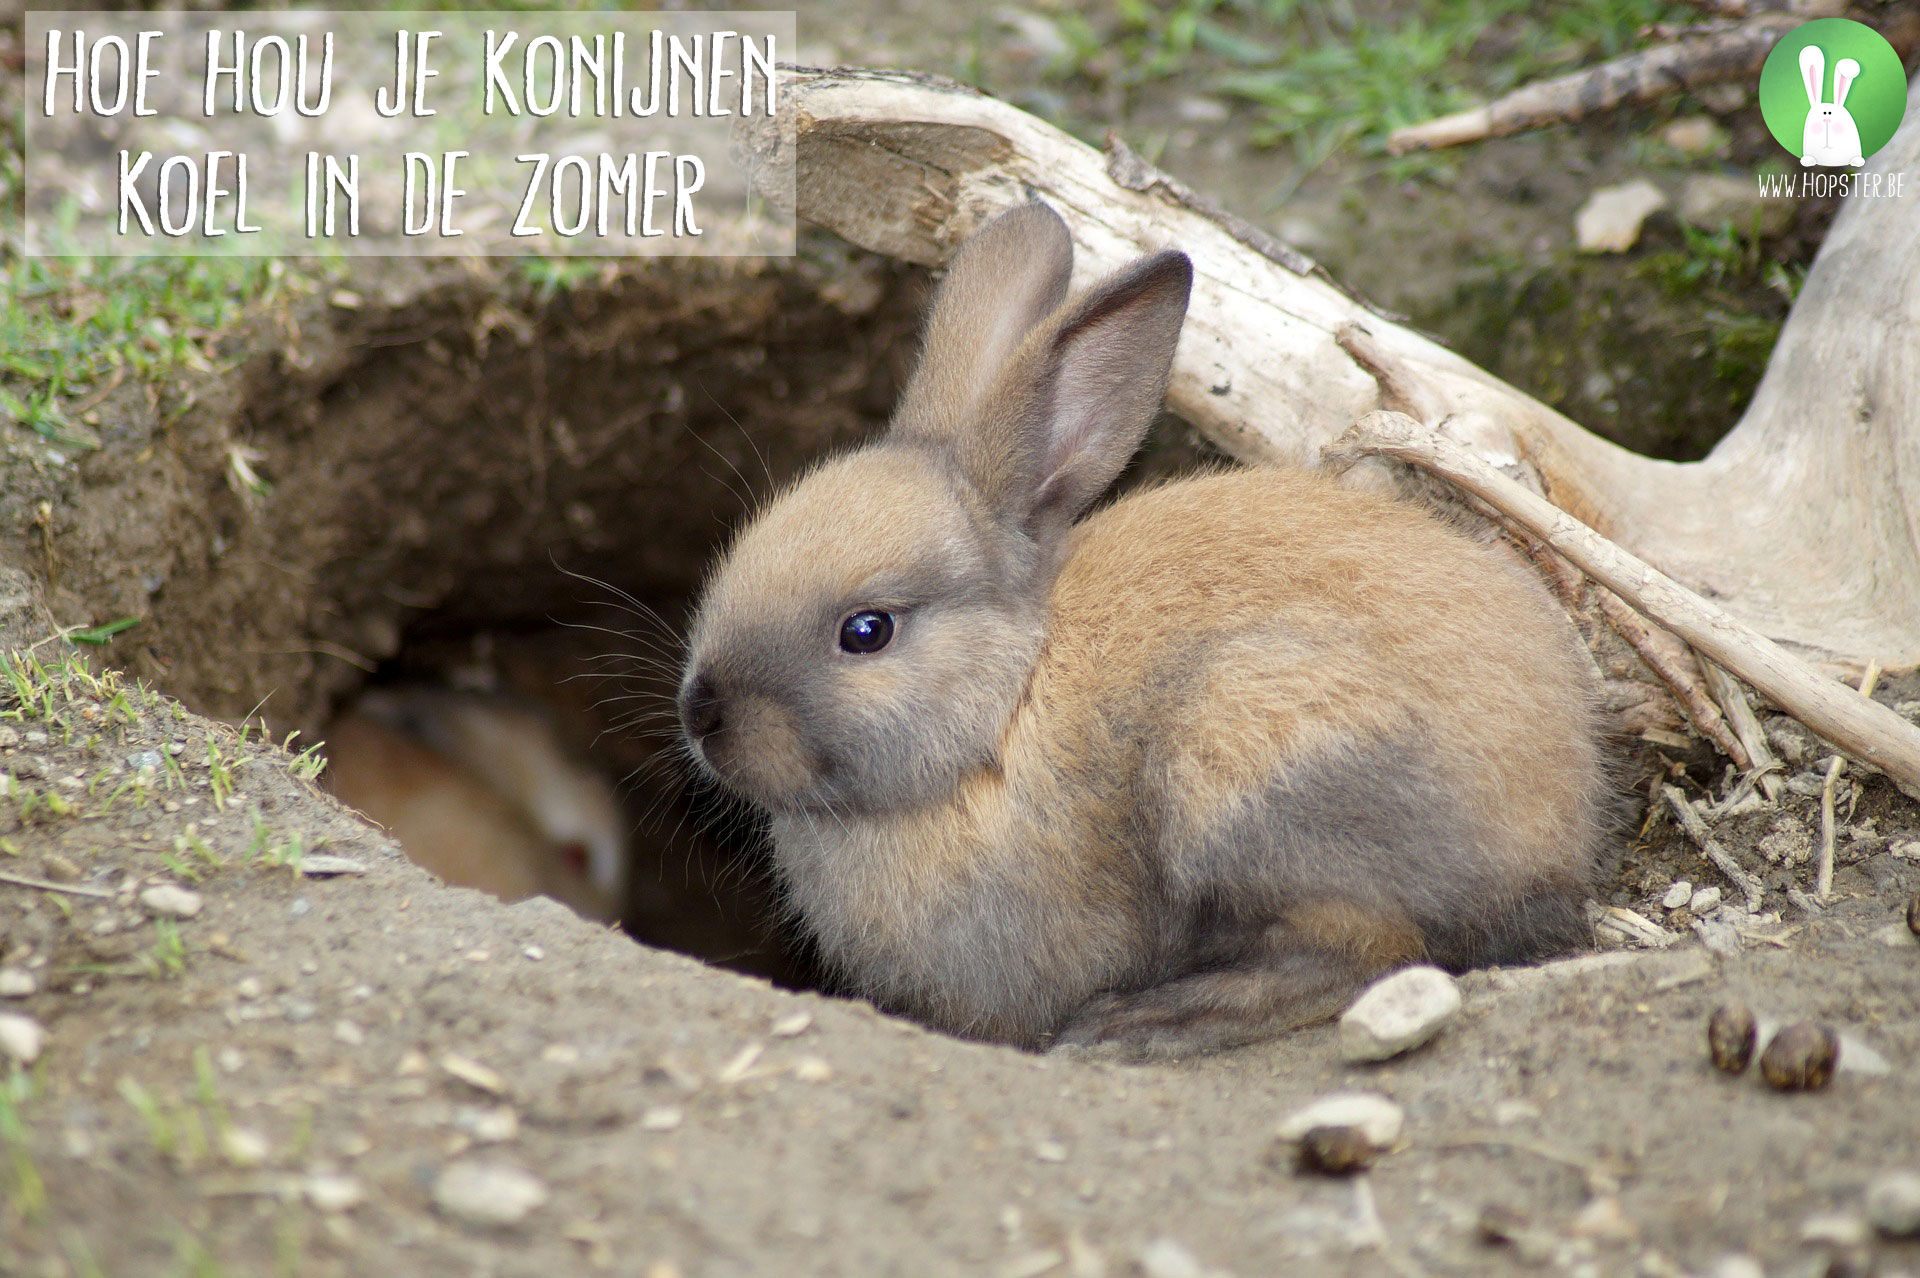 Willen Blozend Mauve Hoe hou je konijnen koel in de zomer | Konijnenadviesbureau Hopster